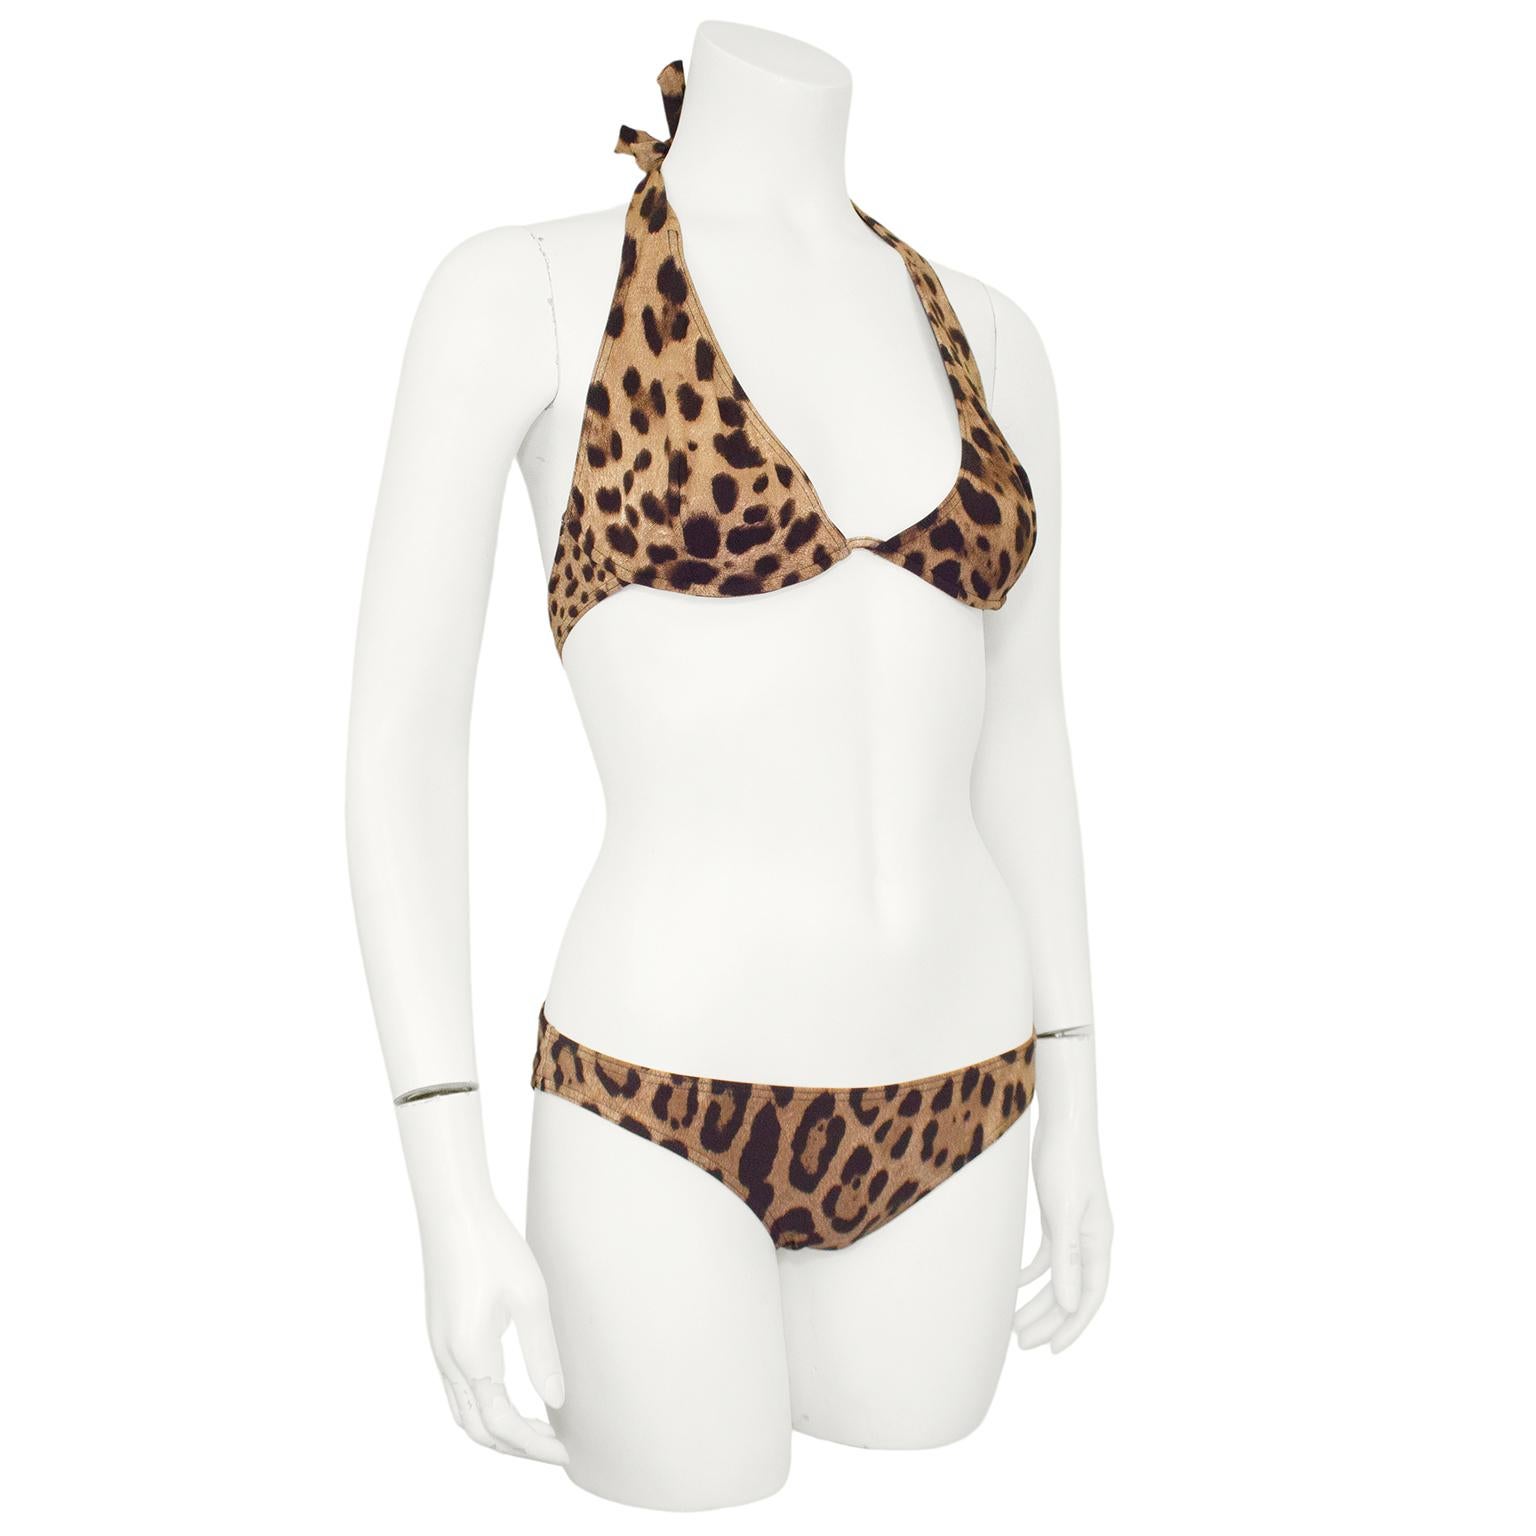 Sehr lustiger 2000er Dolce and Gabbana Beachwear Bikini mit Leopardenmuster. Neckholder-Top mit Bügeln und ineinandergreifender goldfarbener Metallschließe der DG. Niedrig geschnittenes Bikini-Unterteil. Schwarzes Futter. Größe 3 angegeben, passt